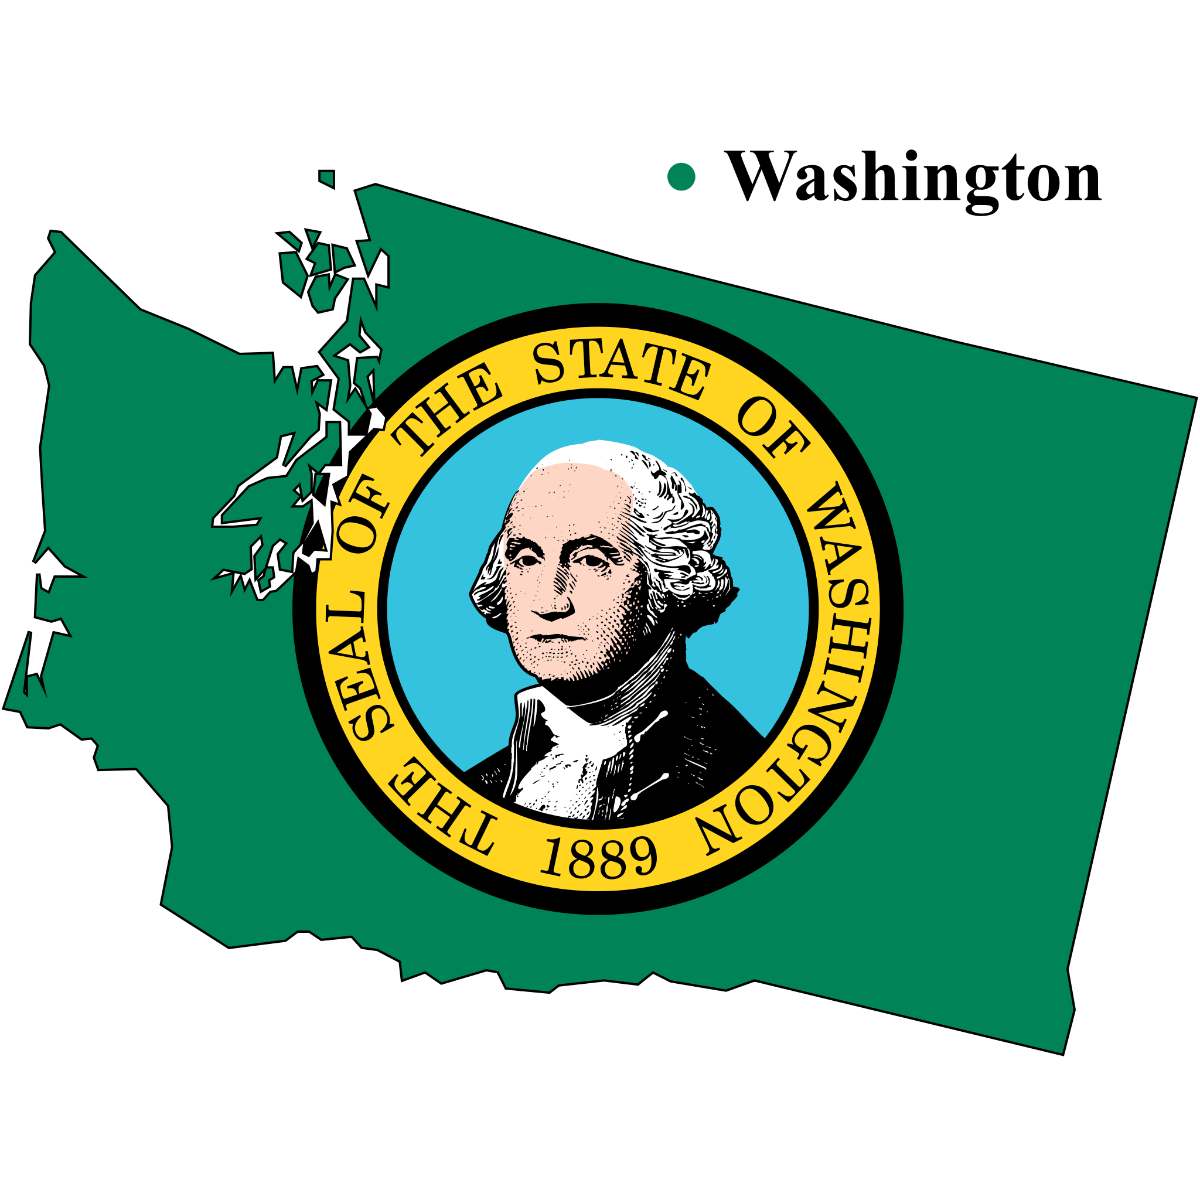 Washington State map cutout with Washington flag superimposed